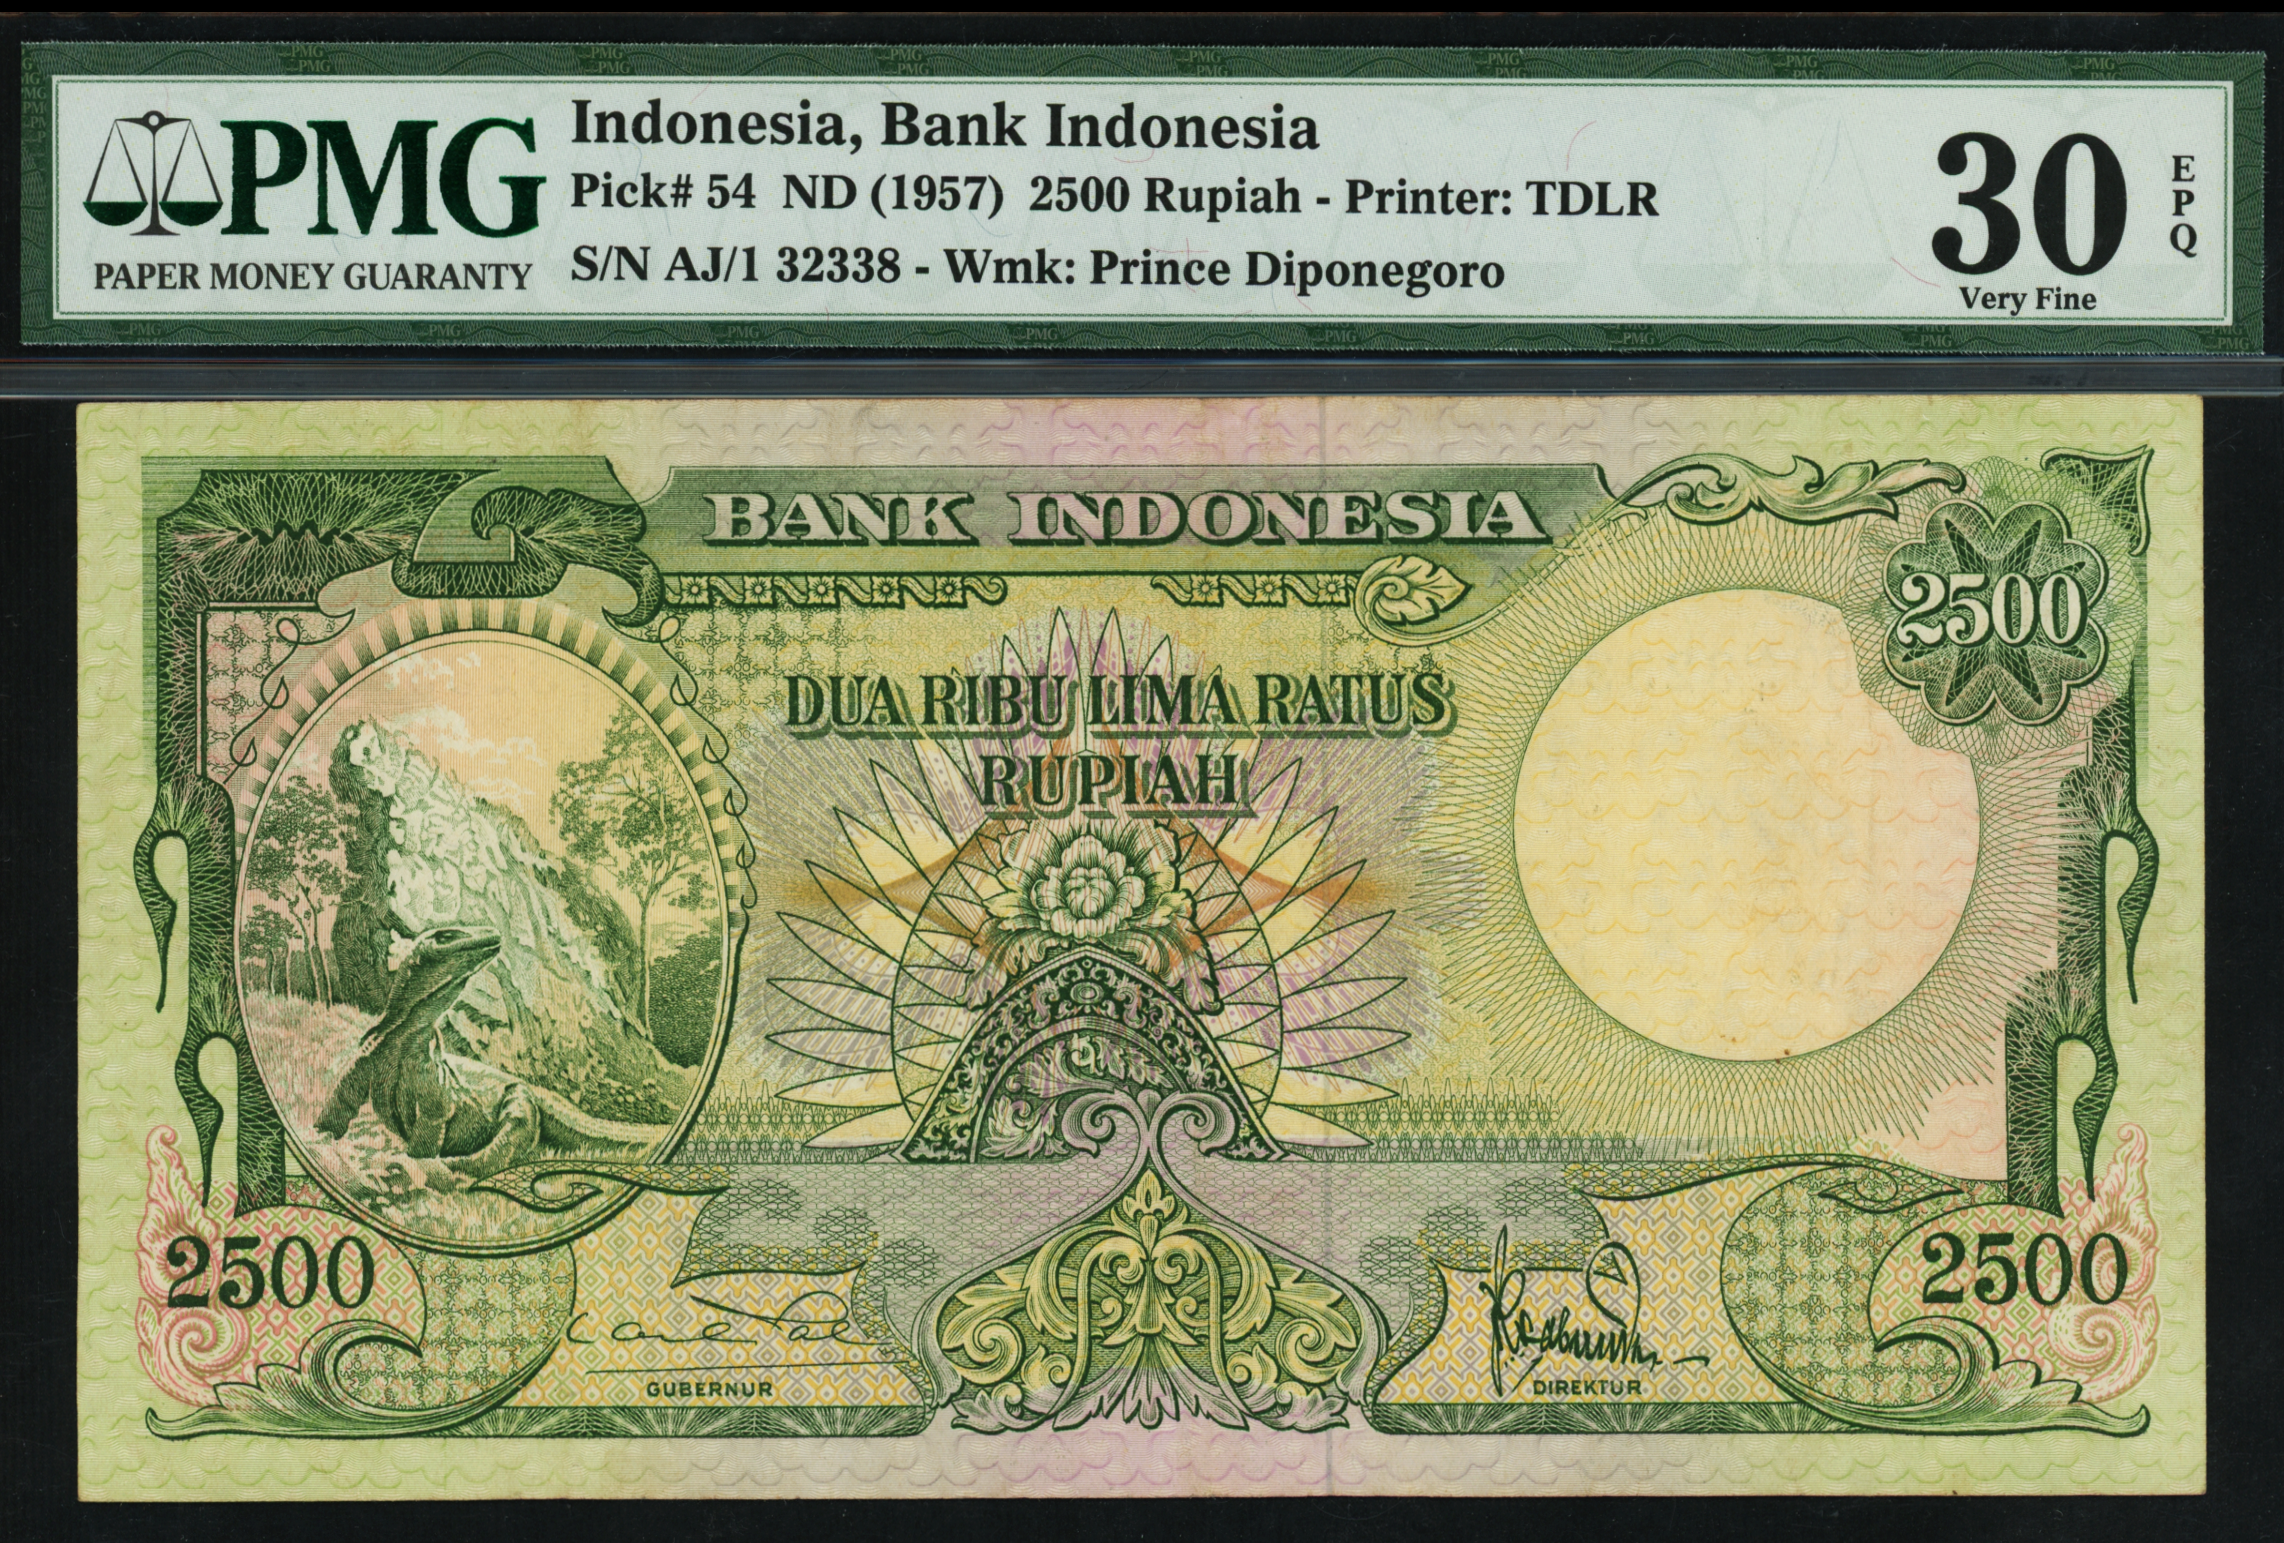 Indonesia 1957 2500 Rupiah AJ/1 32338 PMG 30EPQ | Monetarium